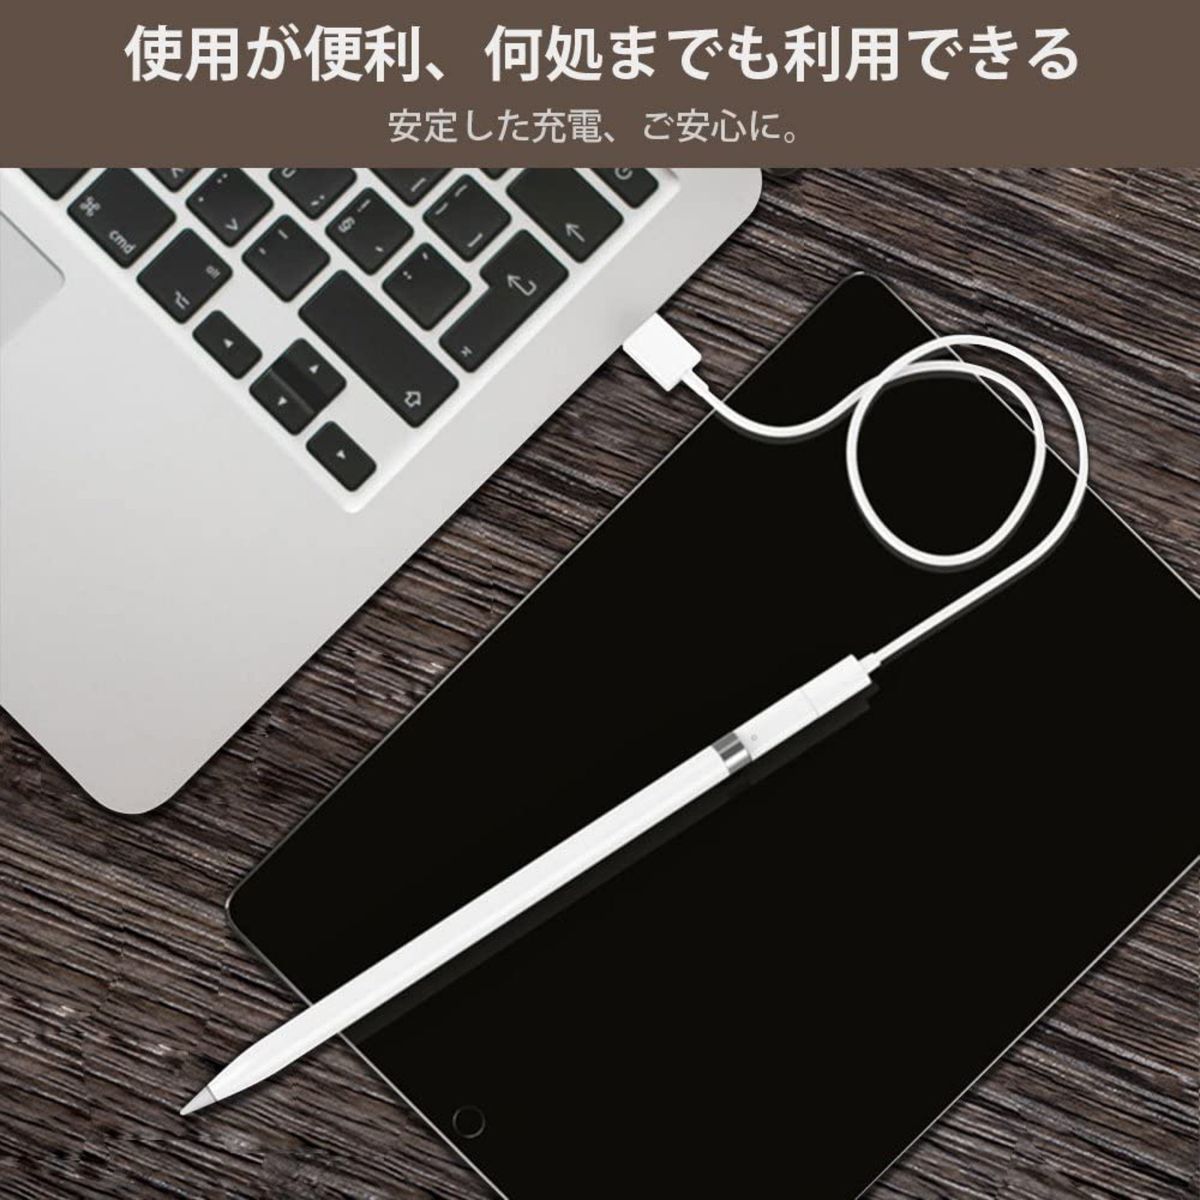 Apple Pencil 充電アダプター アップル ペンシル USBケーブル用変換アダプタ ApplePencil充電 ipad6